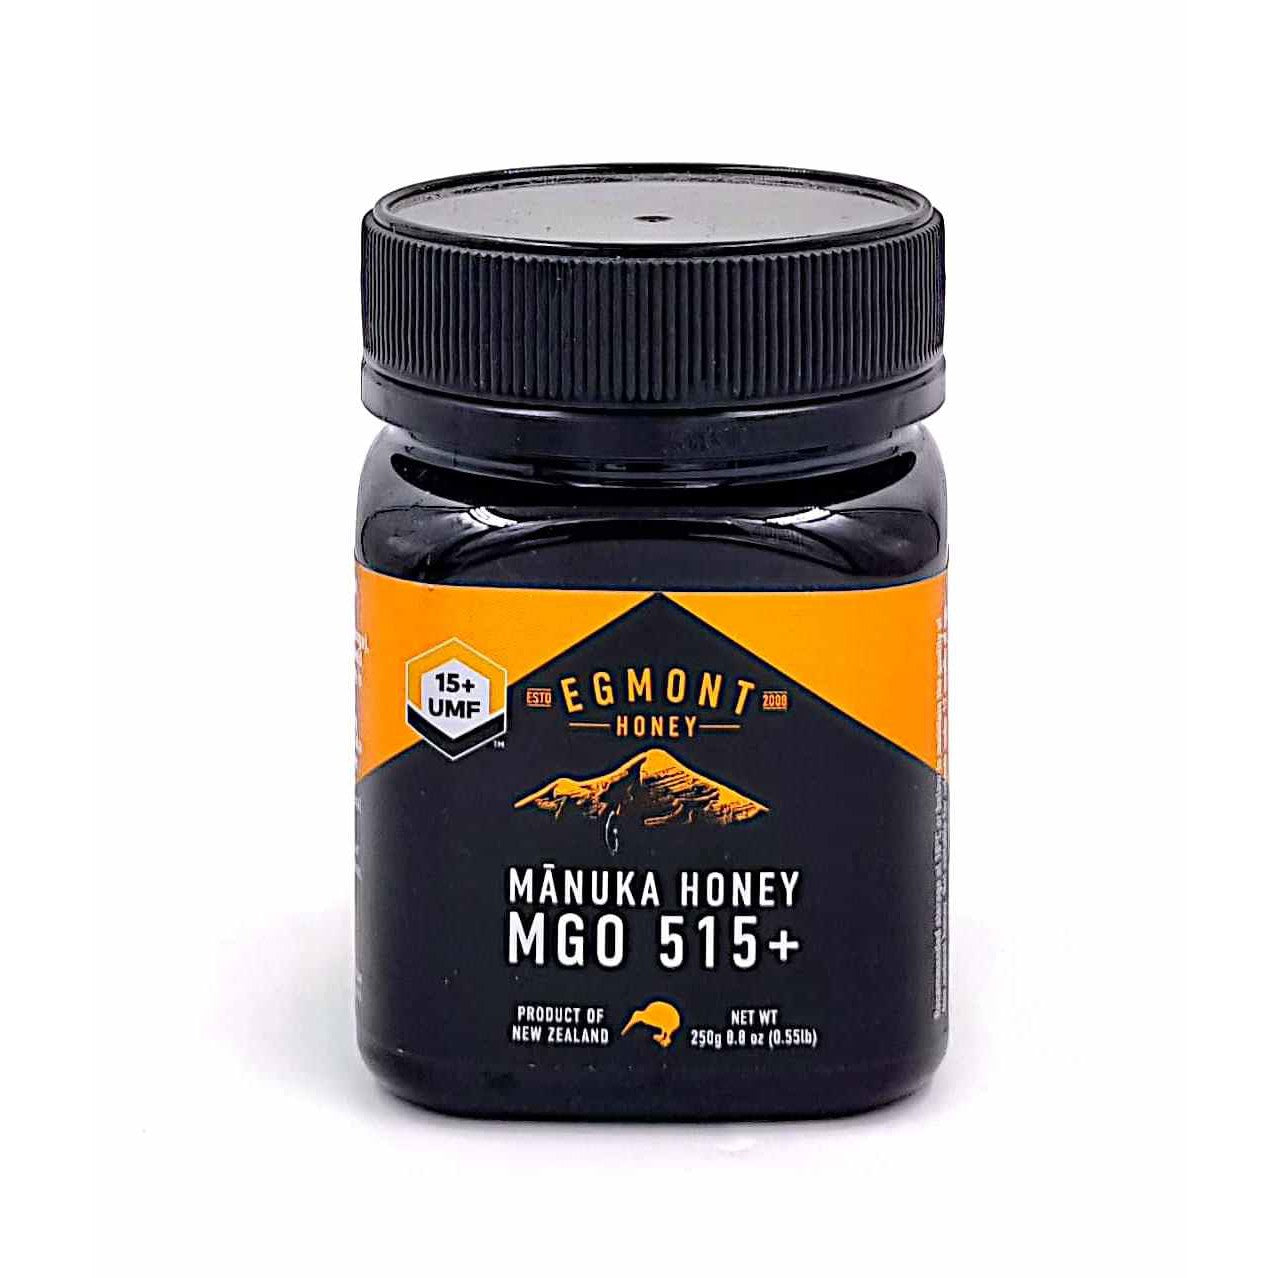 Egmont Manuka Honey UMF 15+ New Zealand 250g